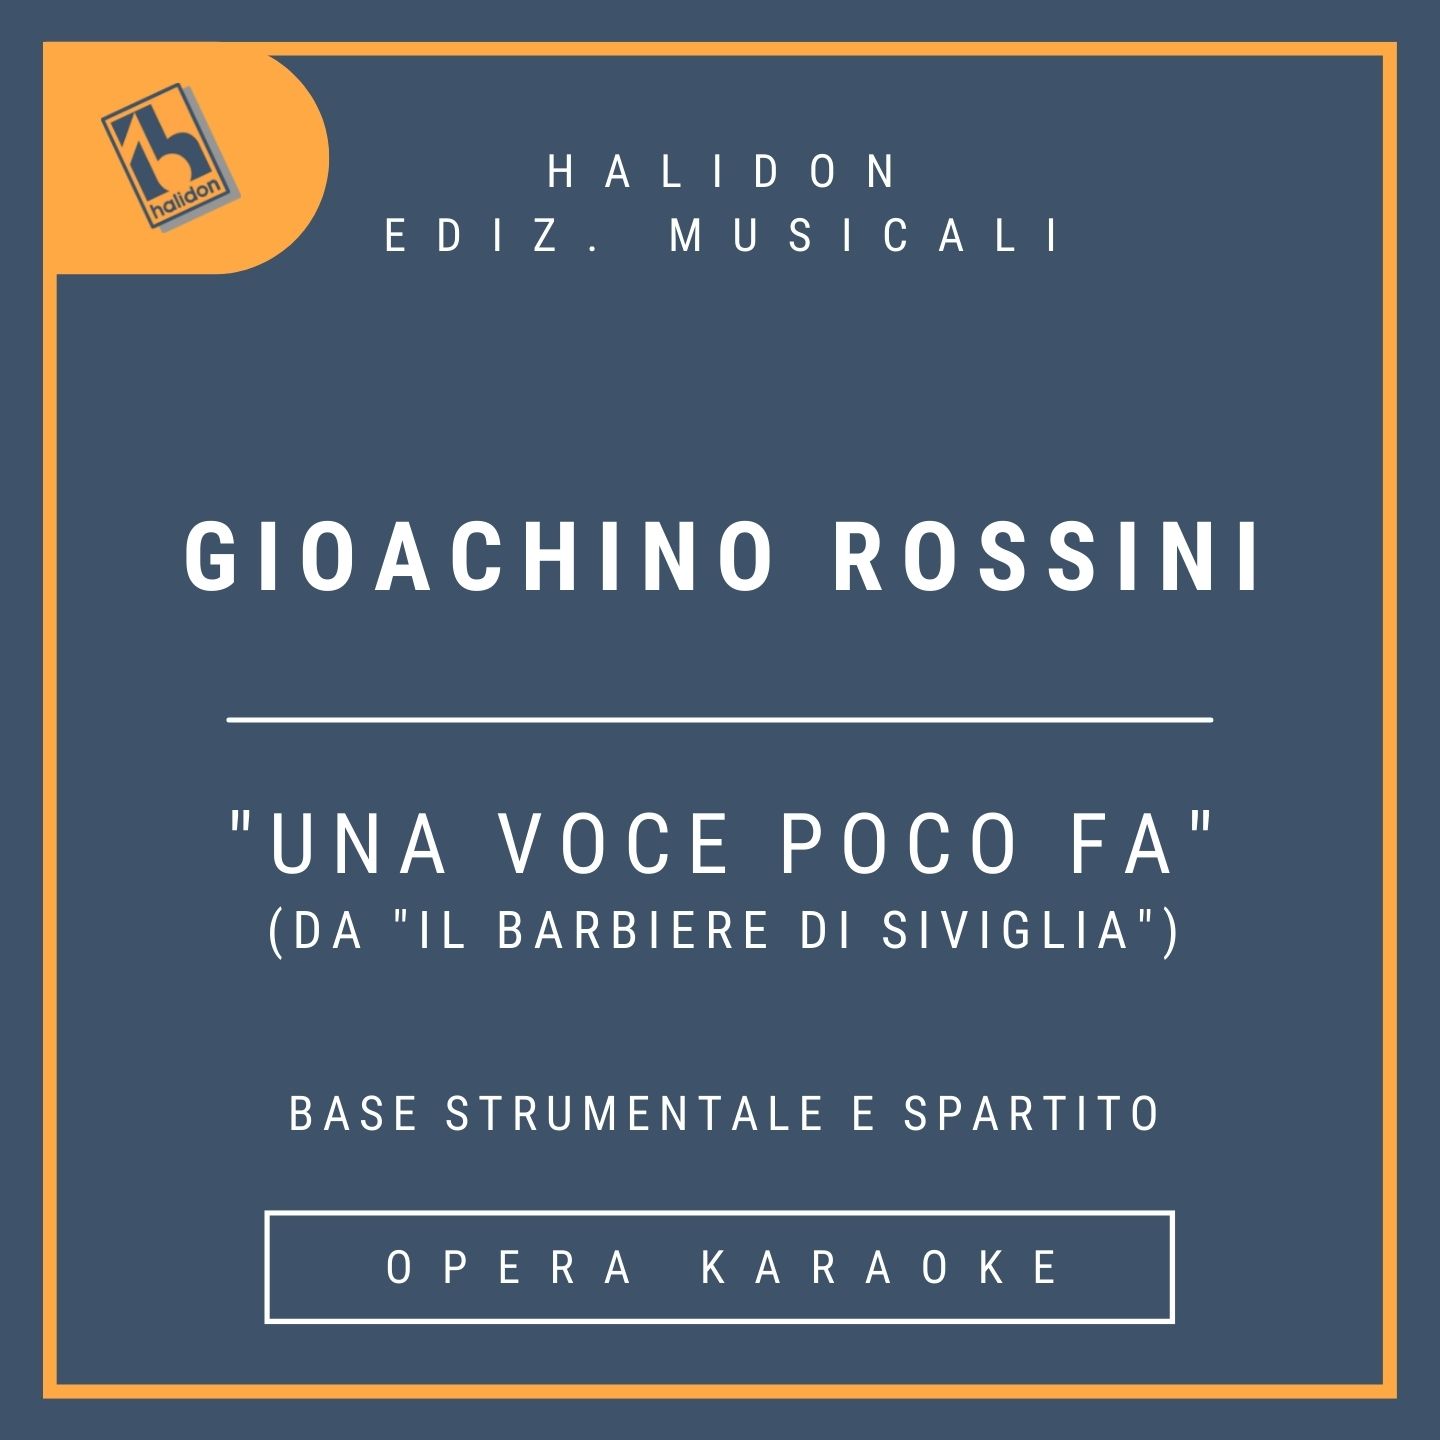 Gioachino Rossini - Una voce poco fa (from 'Il barbiere di Siviglia') - Rosina's Aria (soprano-mezzo) - Instrumental track + sheet